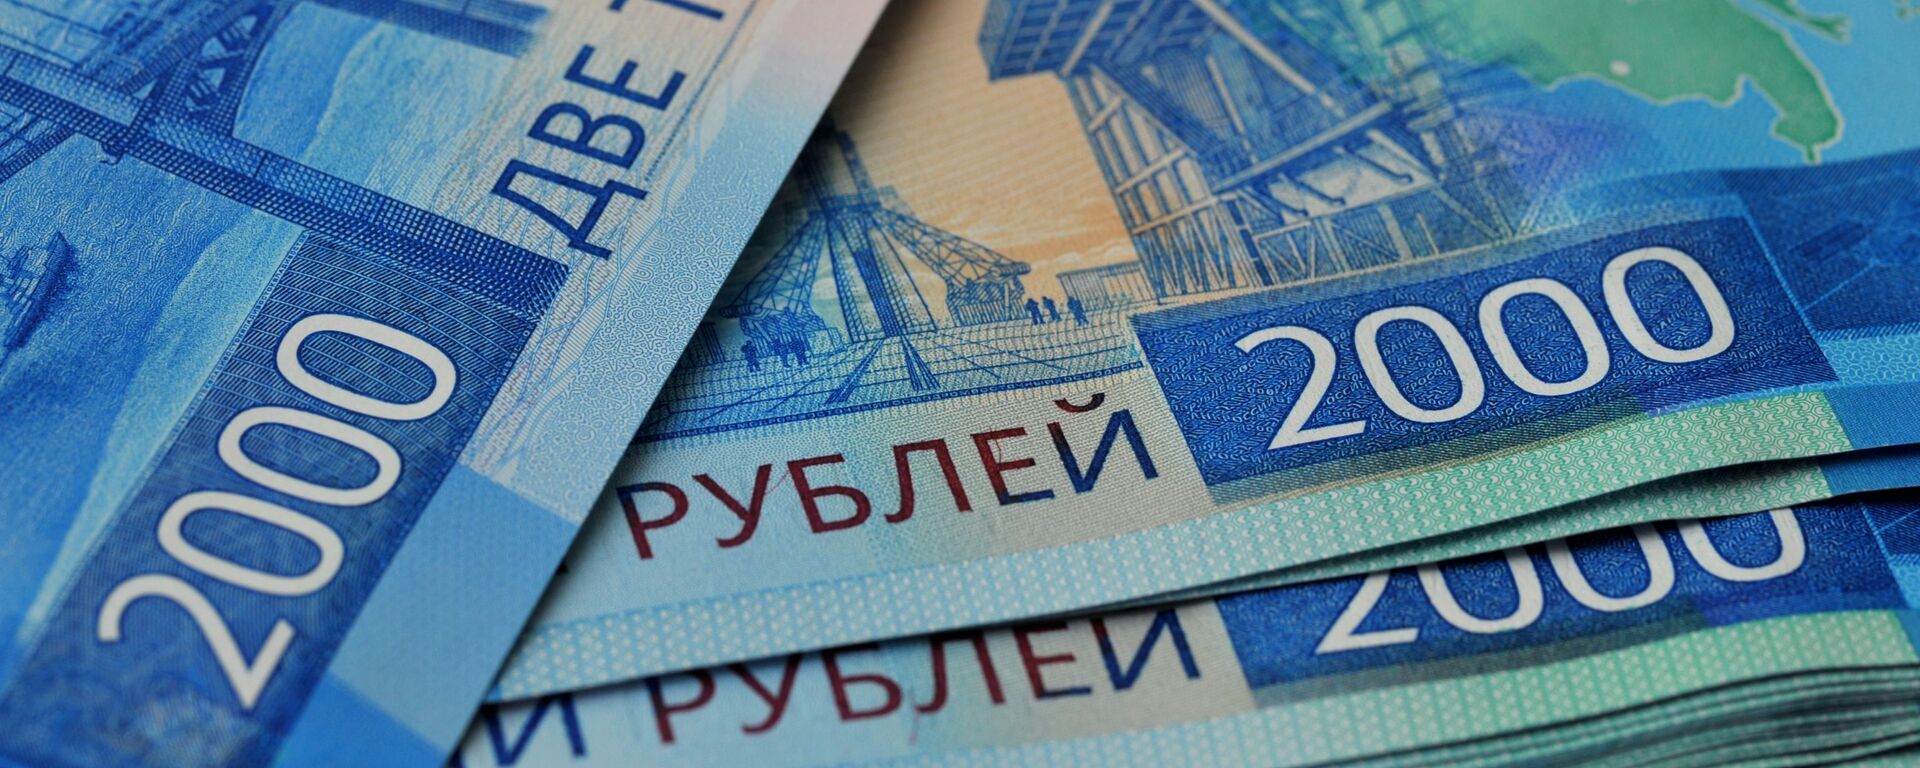 Банкноты номиналом 2000 рублей. - Sputnik Аҧсны, 1920, 30.06.2021